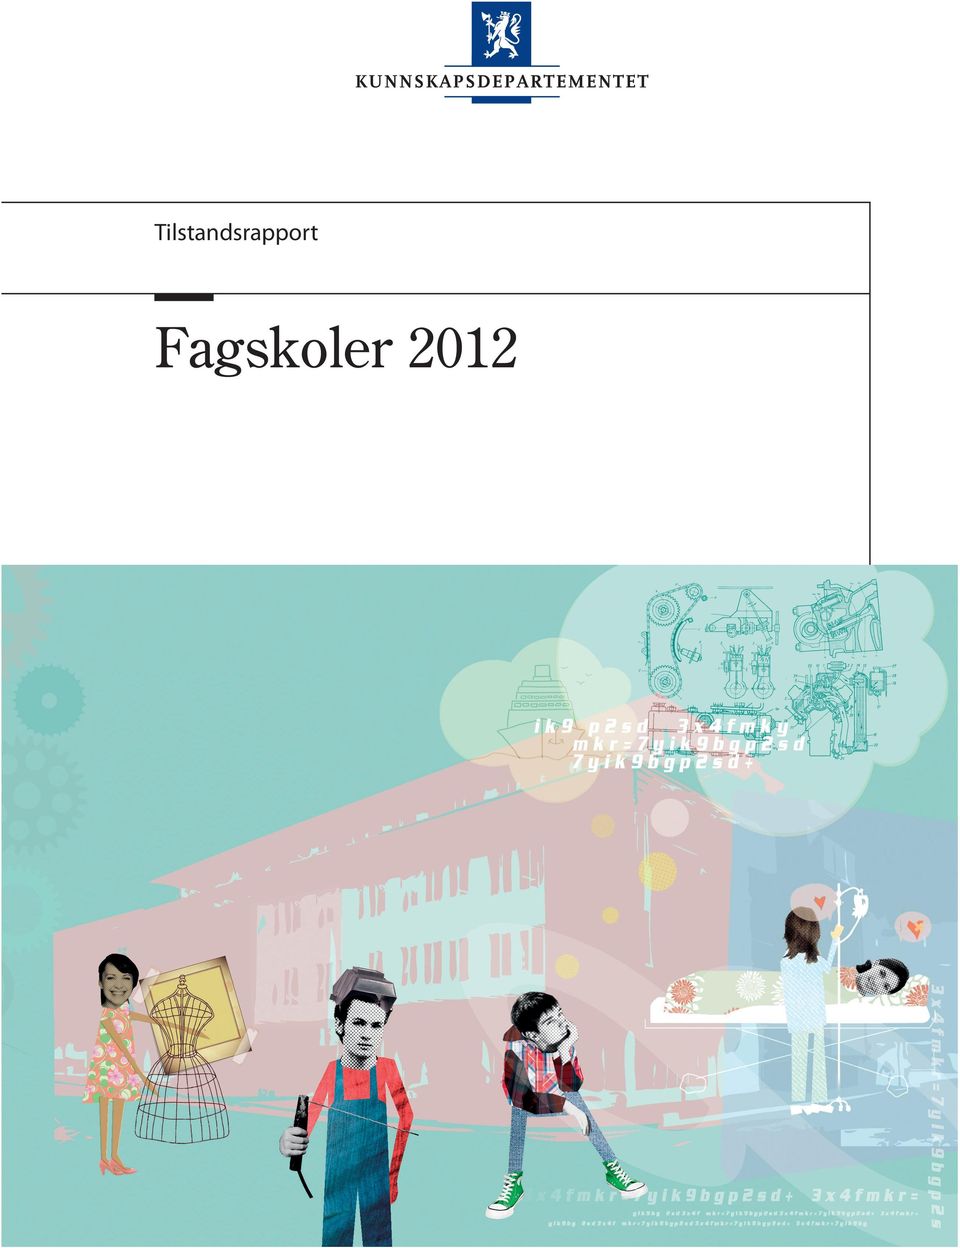 no/kd Fagskoler 2012 Publikasjonskode: F-4283 B Design og illustrasjon: